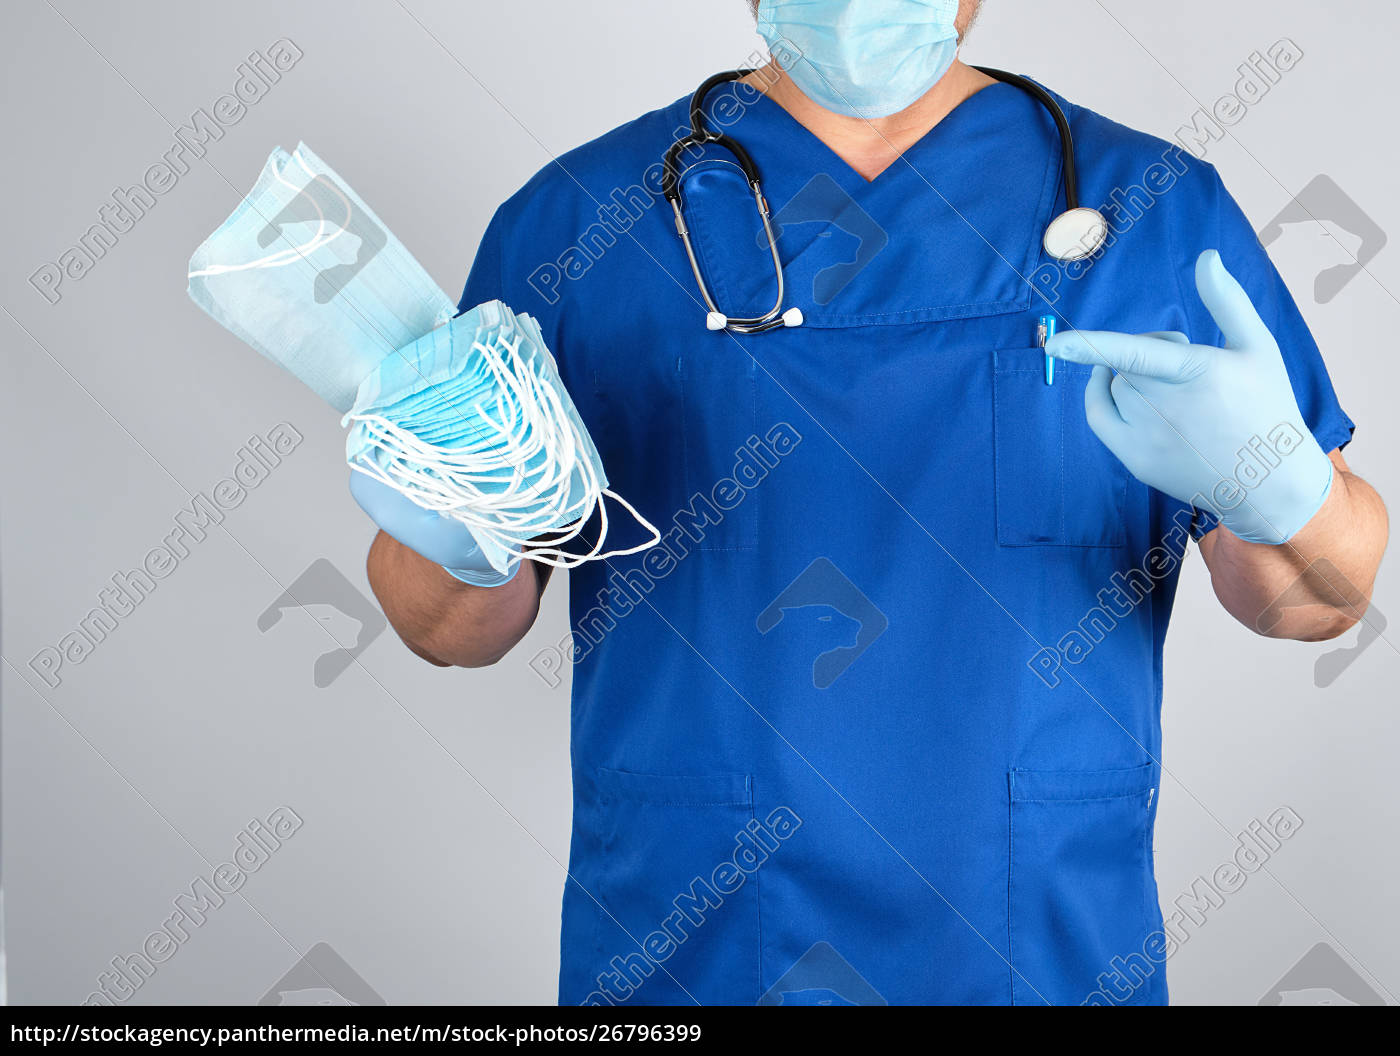 læge uniform i latex handsker holder - Stockphoto #26796399 | PantherMedia Billedbureau